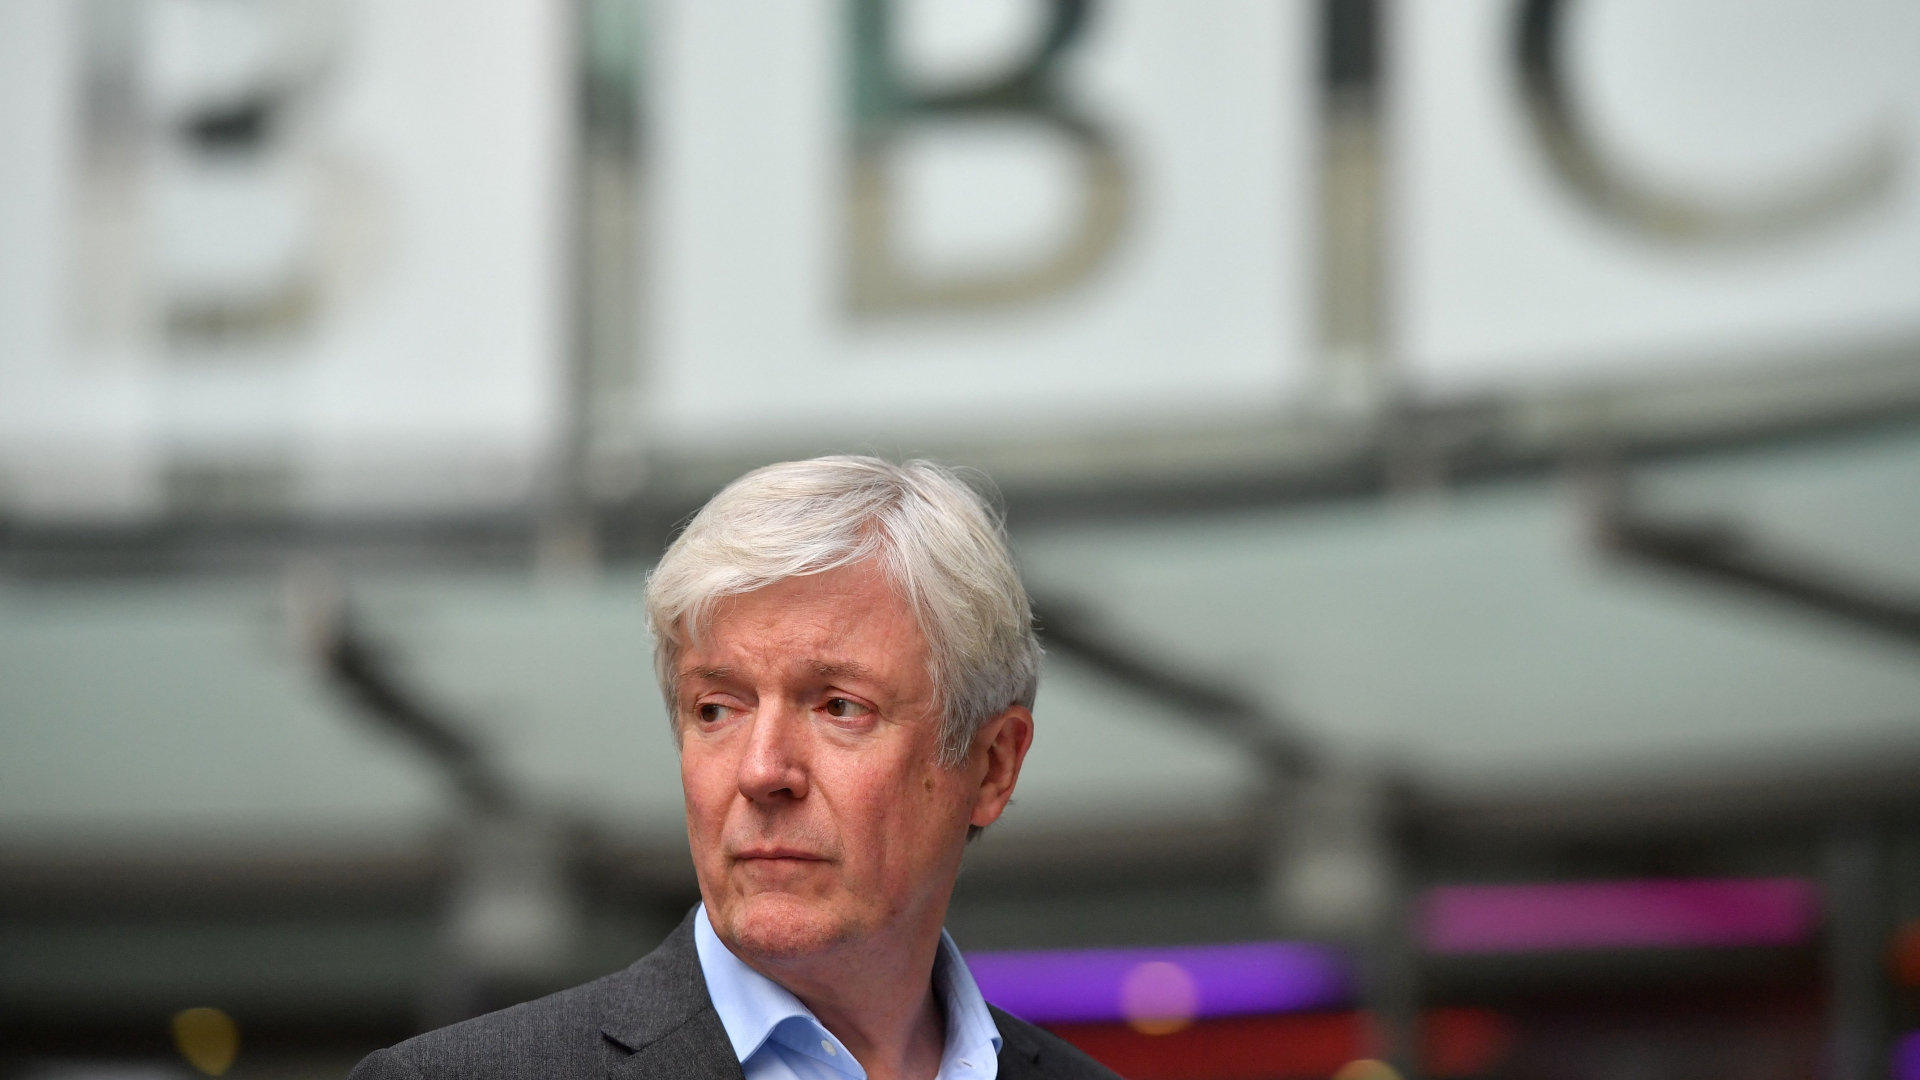 Tony Hall im November 2018 vor dem Gebäude der BBC | AFP